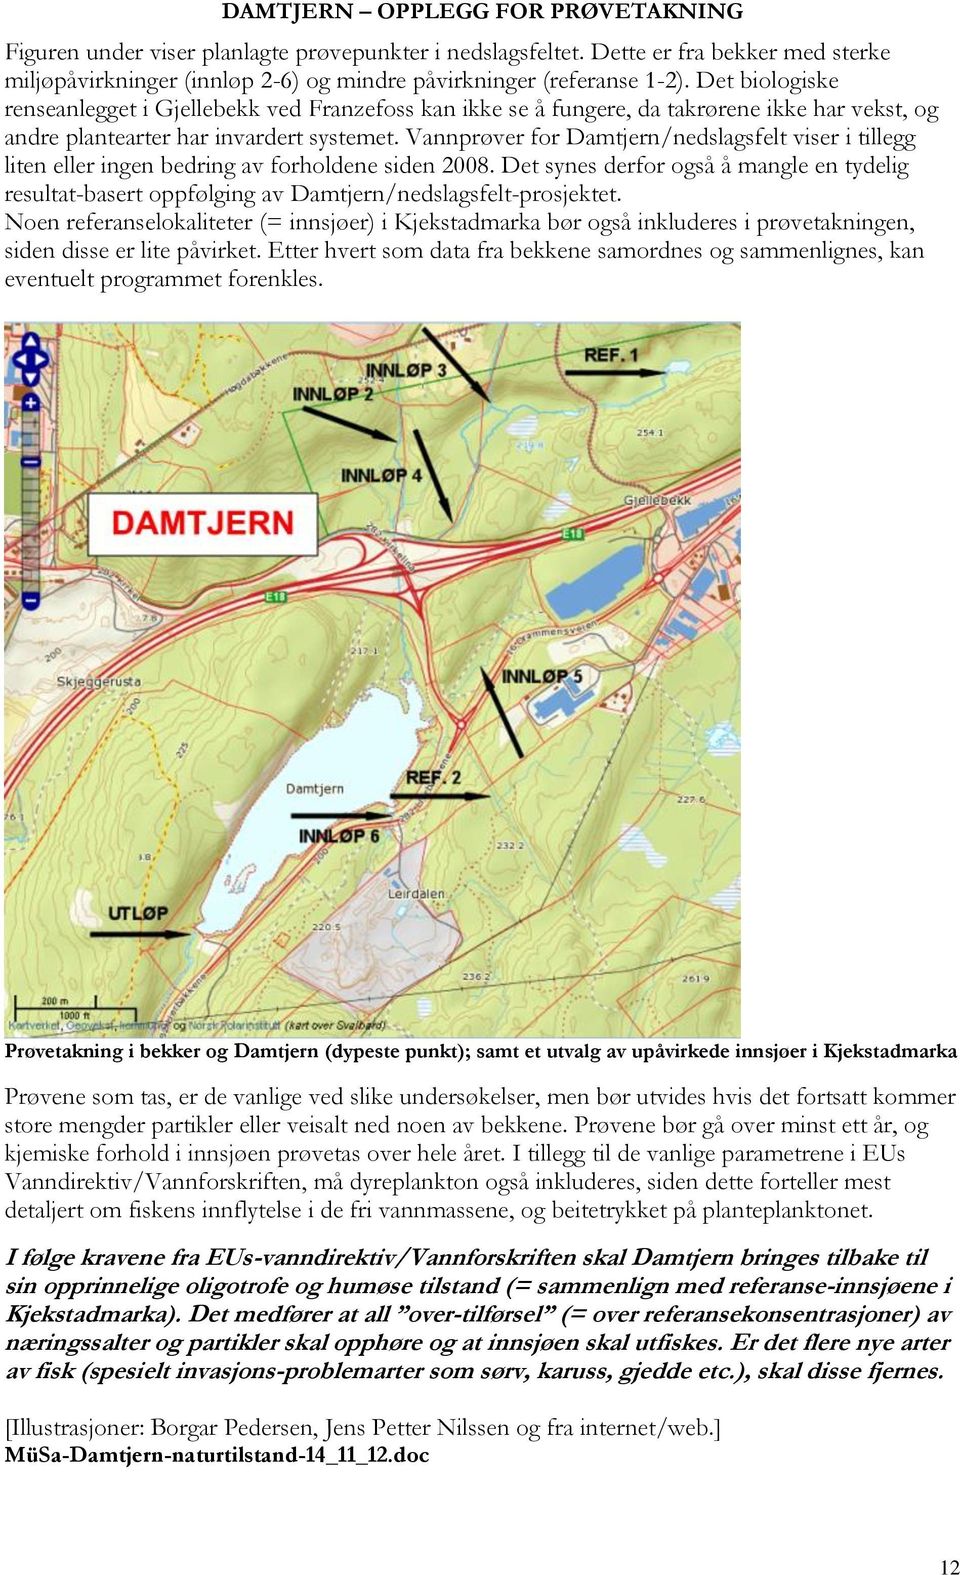 Vannprøver for Damtjern/nedslagsfelt viser i tillegg liten eller ingen bedring av forholdene siden 2008.